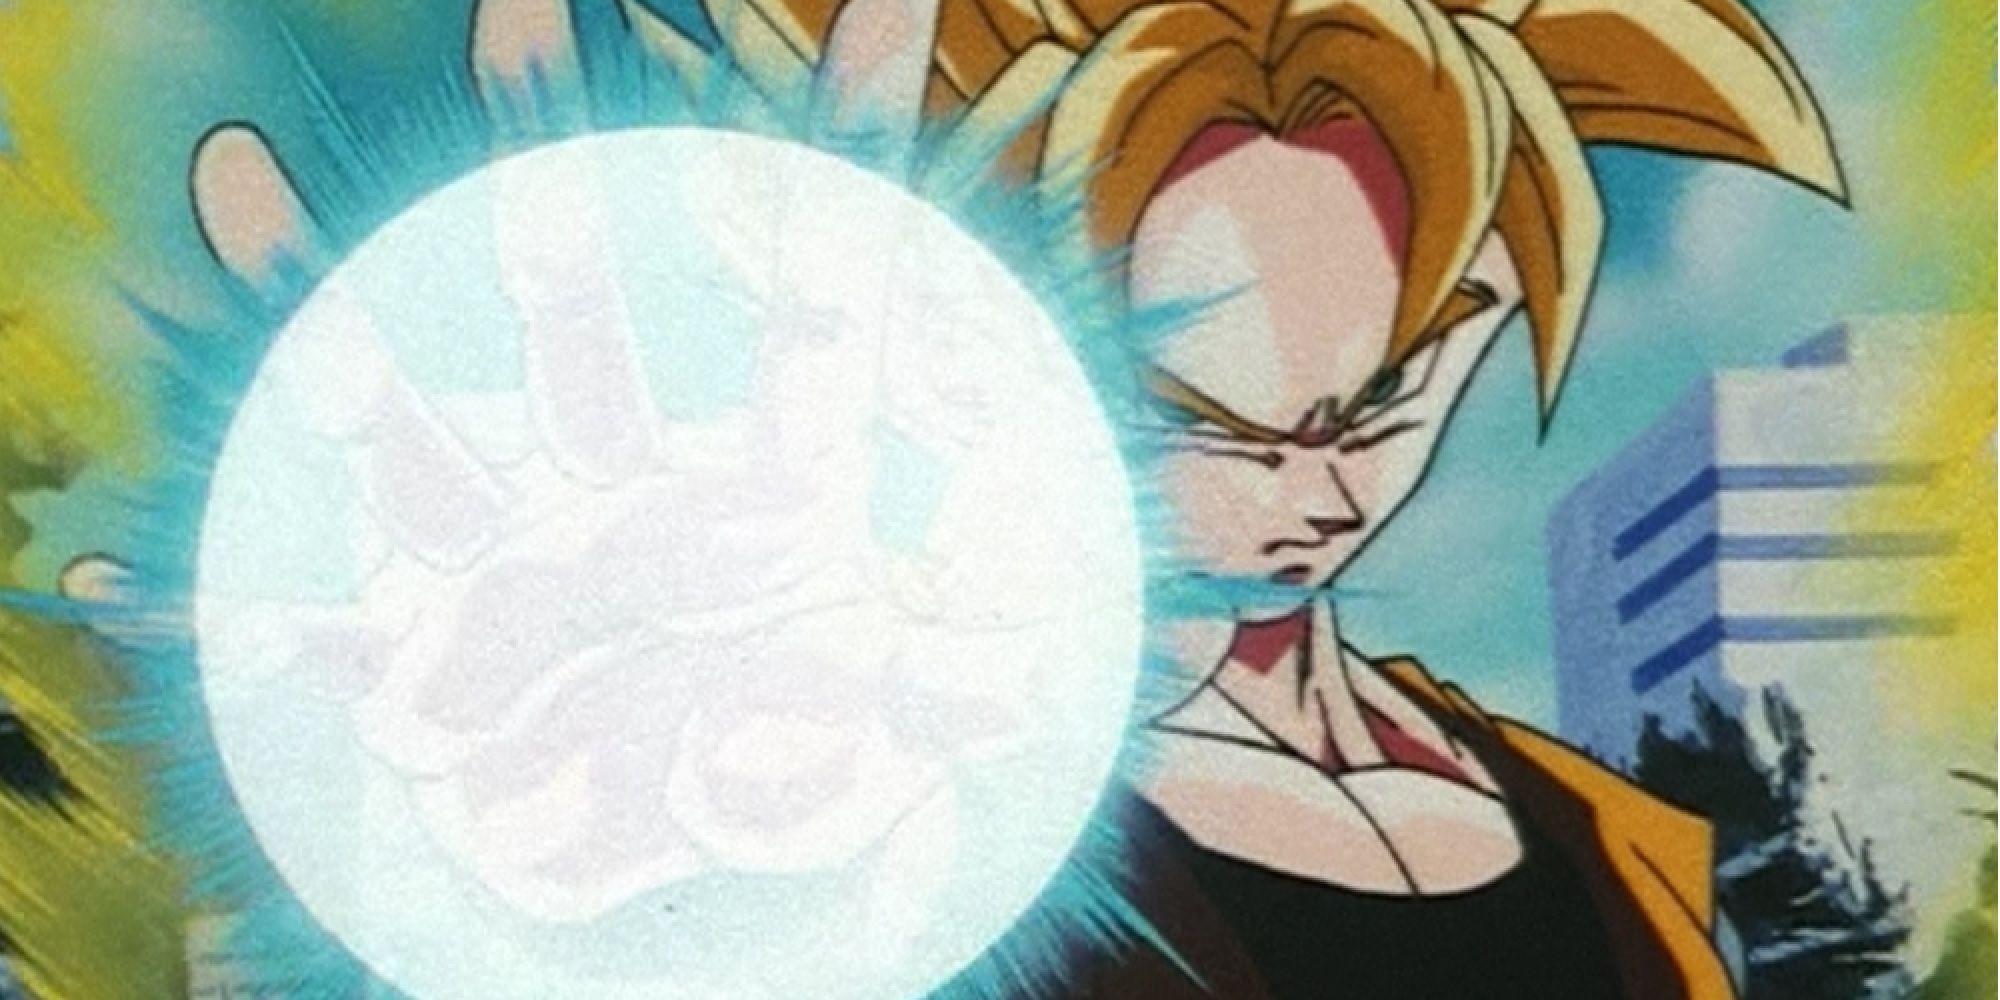 Goku Goes Super Saiyan 2 against Majin Buu 